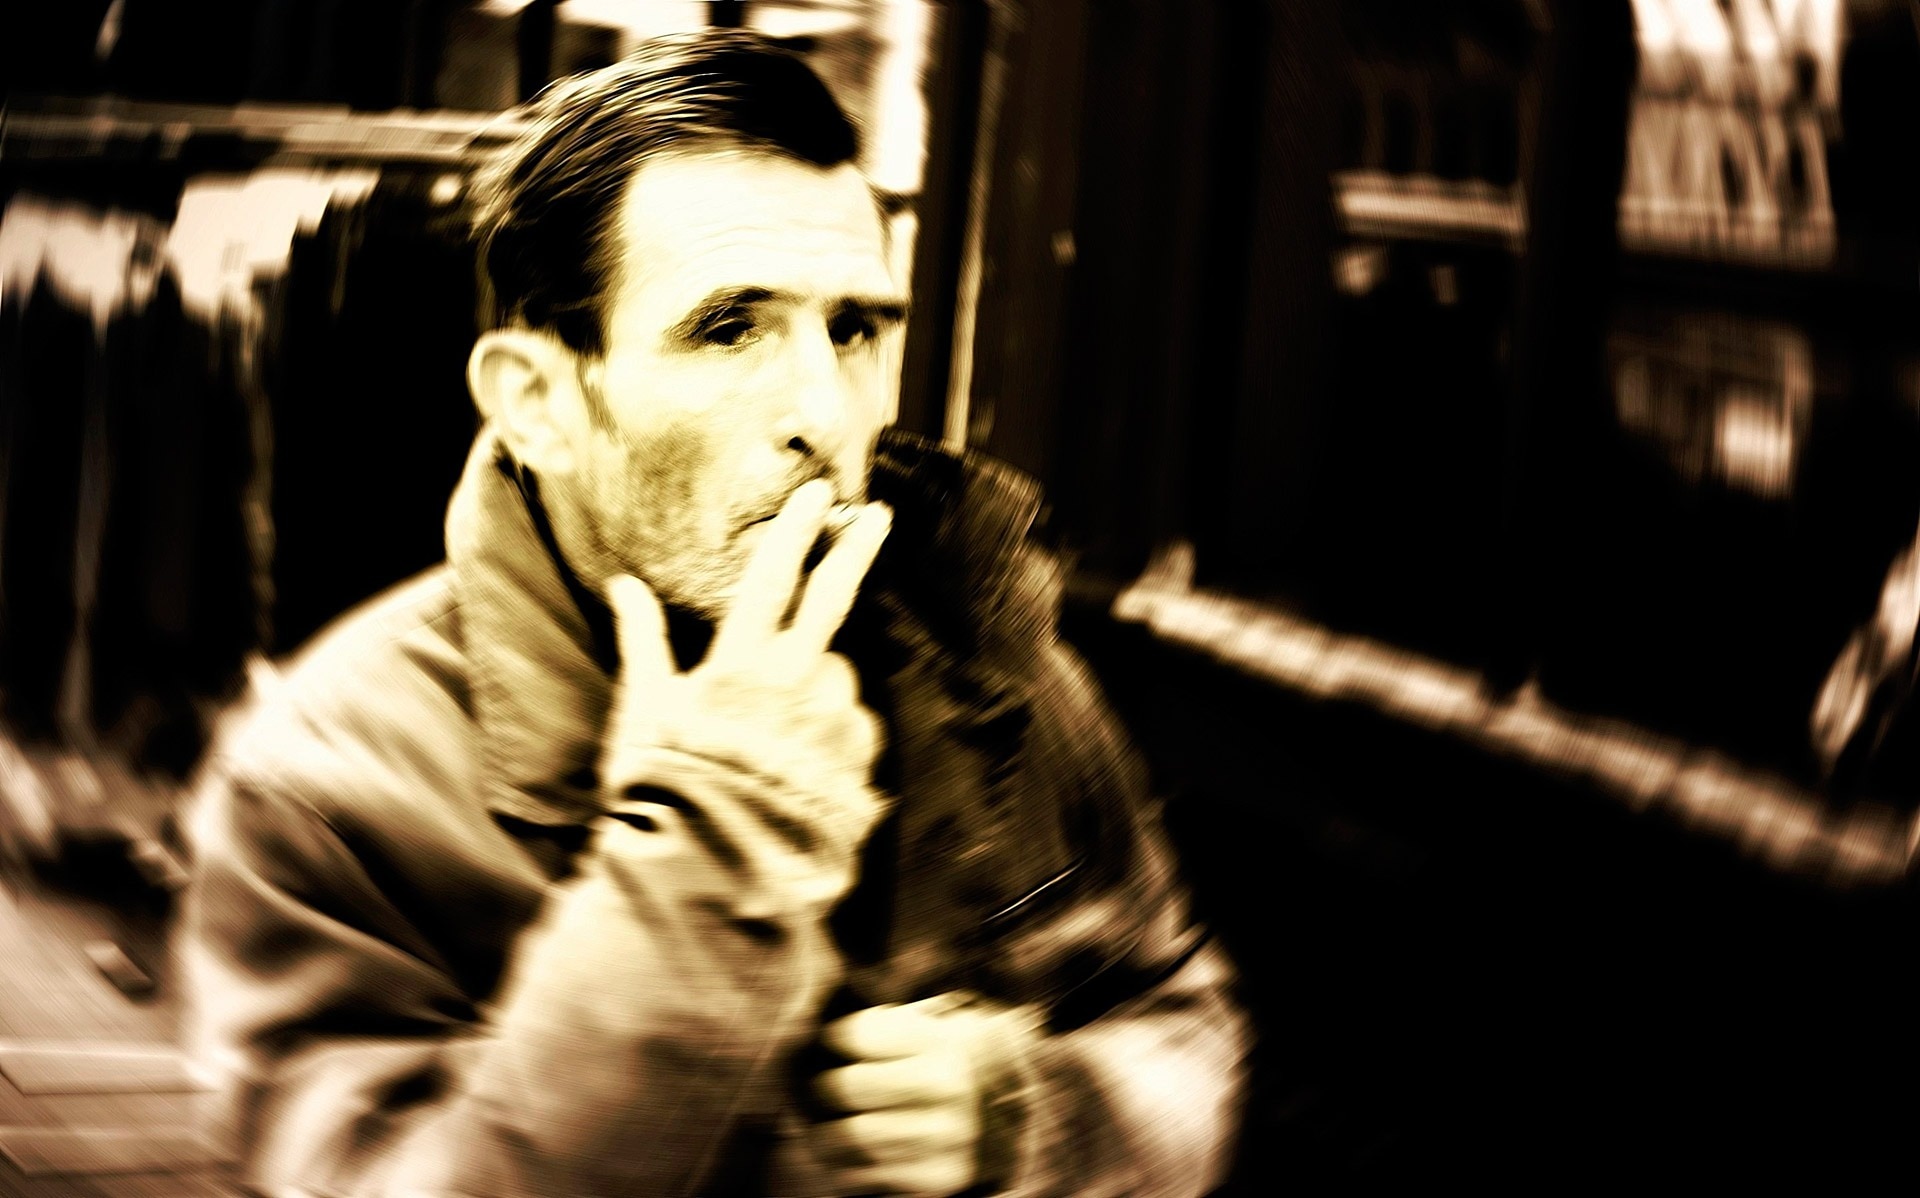 man smoking outside sepia photo